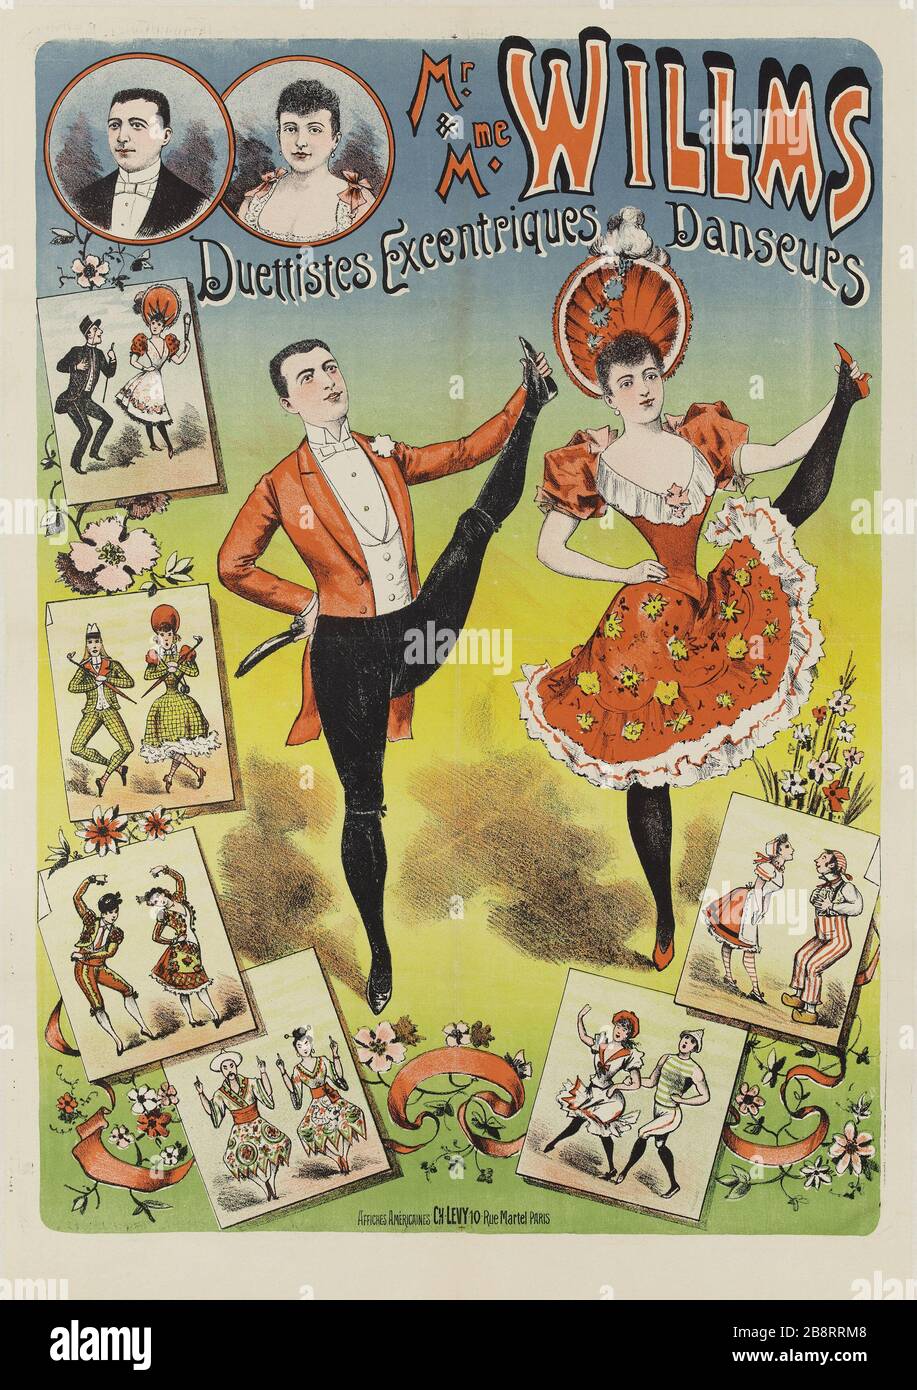 MR. MS & Willms, Duo EXZENTRISCHE TÄNZERINNEN Anonyme. "MR. & Mme Willms, Duettistes excentriques danseurs'. Lithographie. 1880-1900. Paris, musée Carnavalet. Stockfoto